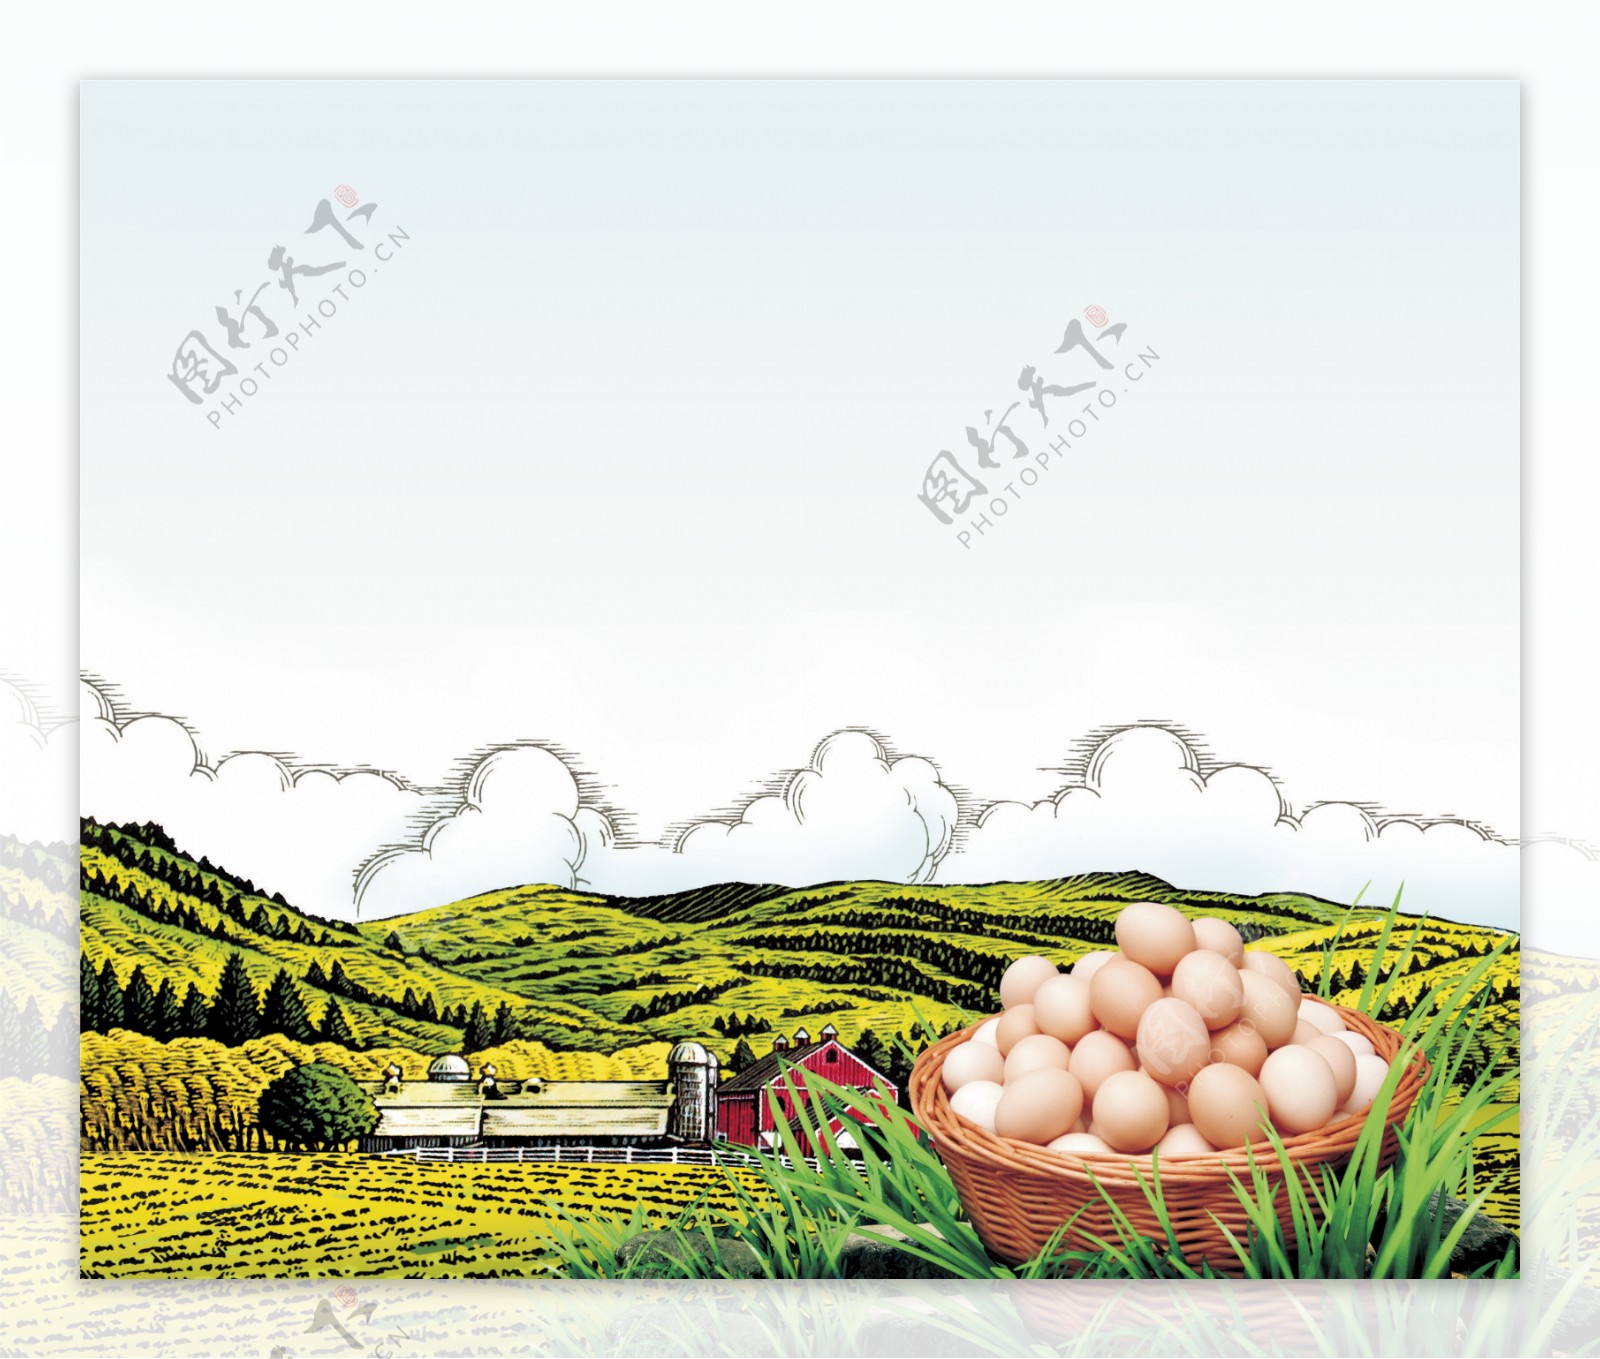 圣迪乐手绘云朵鸡蛋广告素材